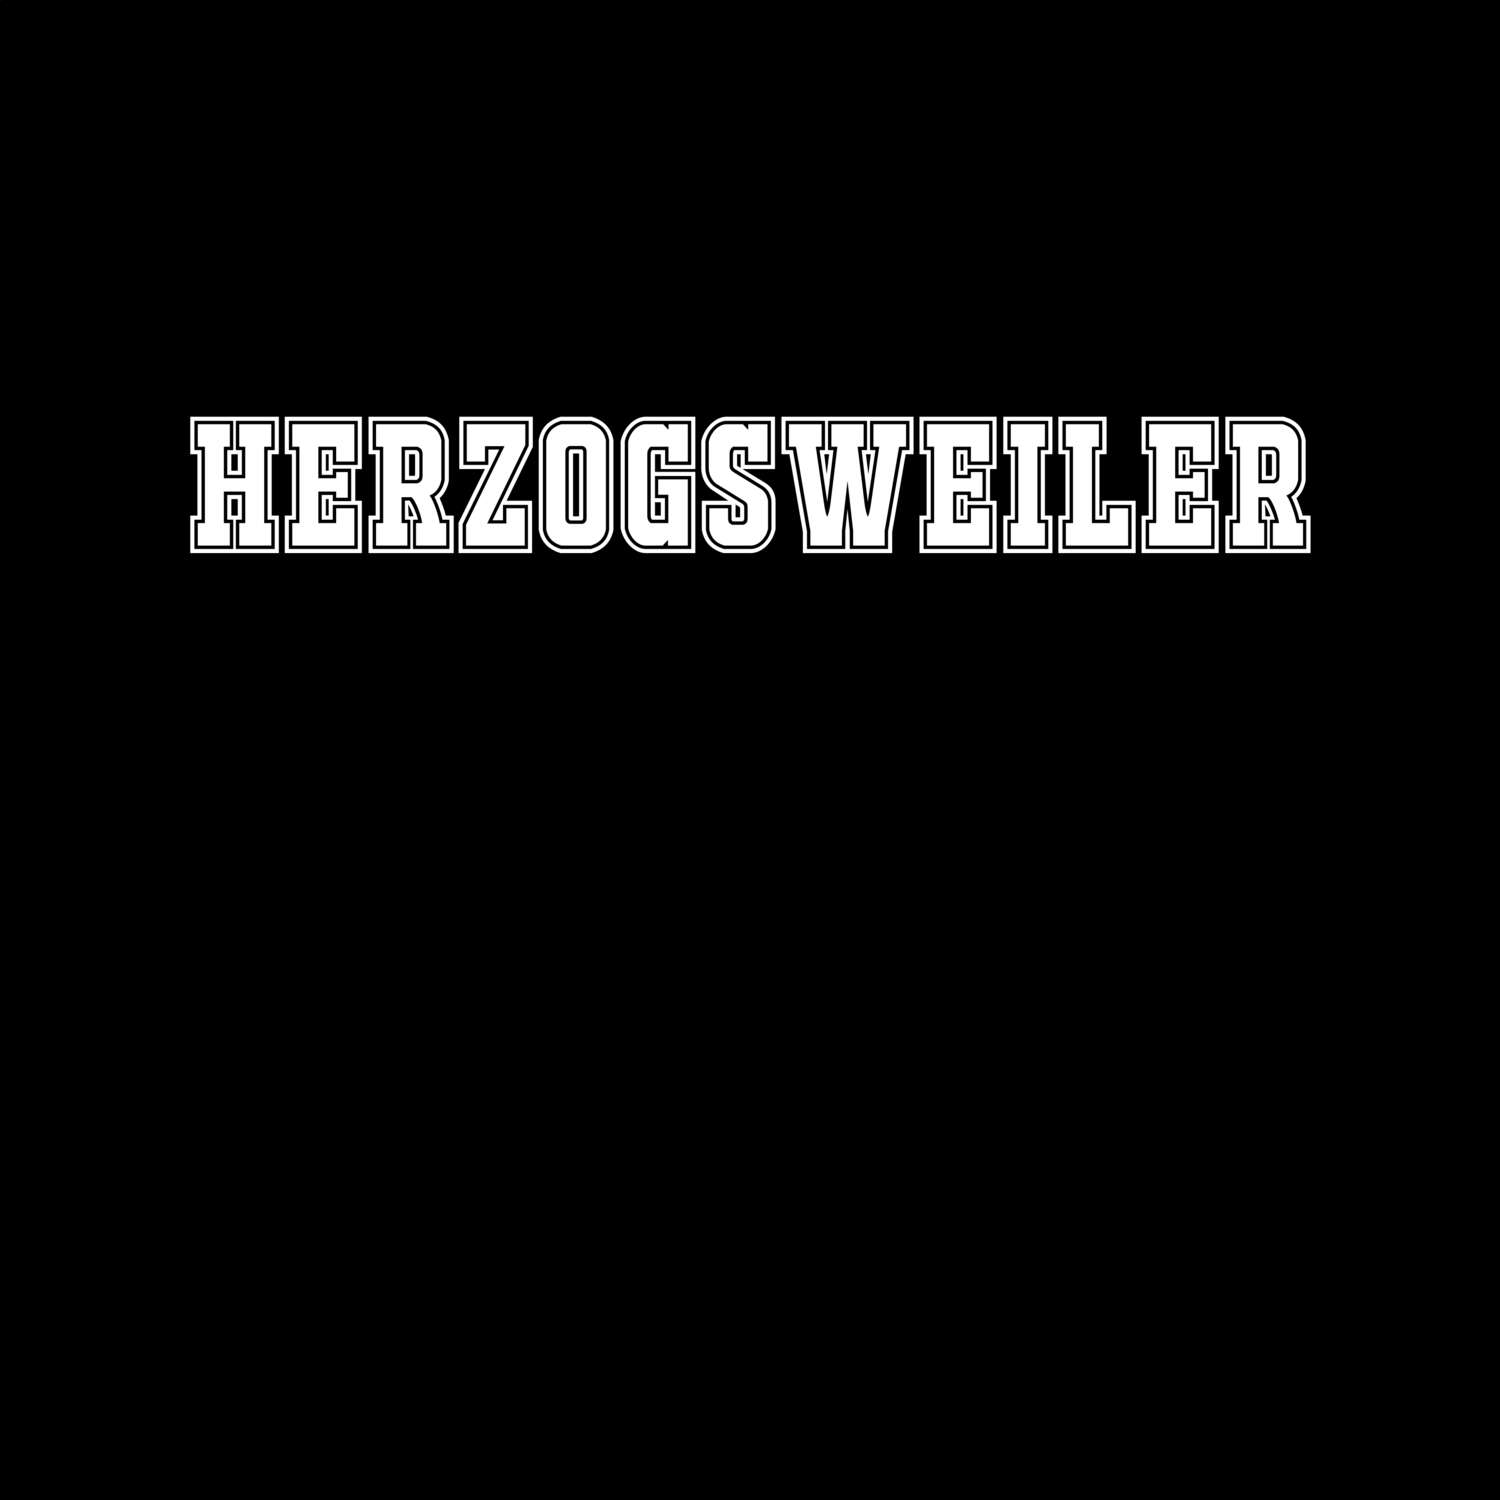 Herzogsweiler T-Shirt »Classic«